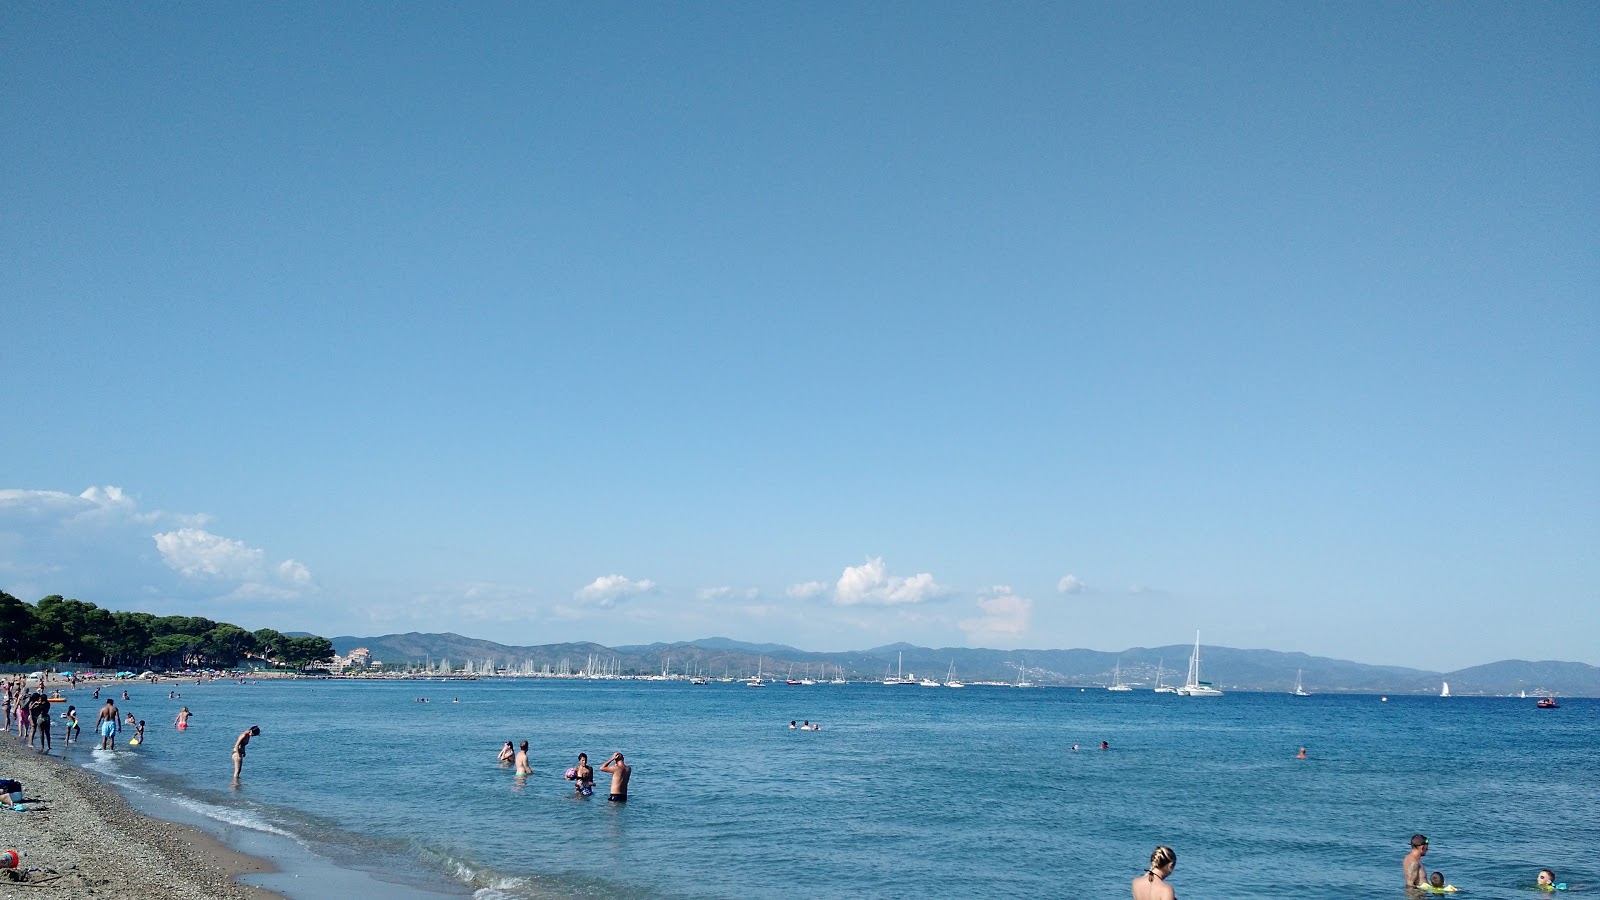 Fotografie cu Capte beach II - locul popular printre cunoscătorii de relaxare